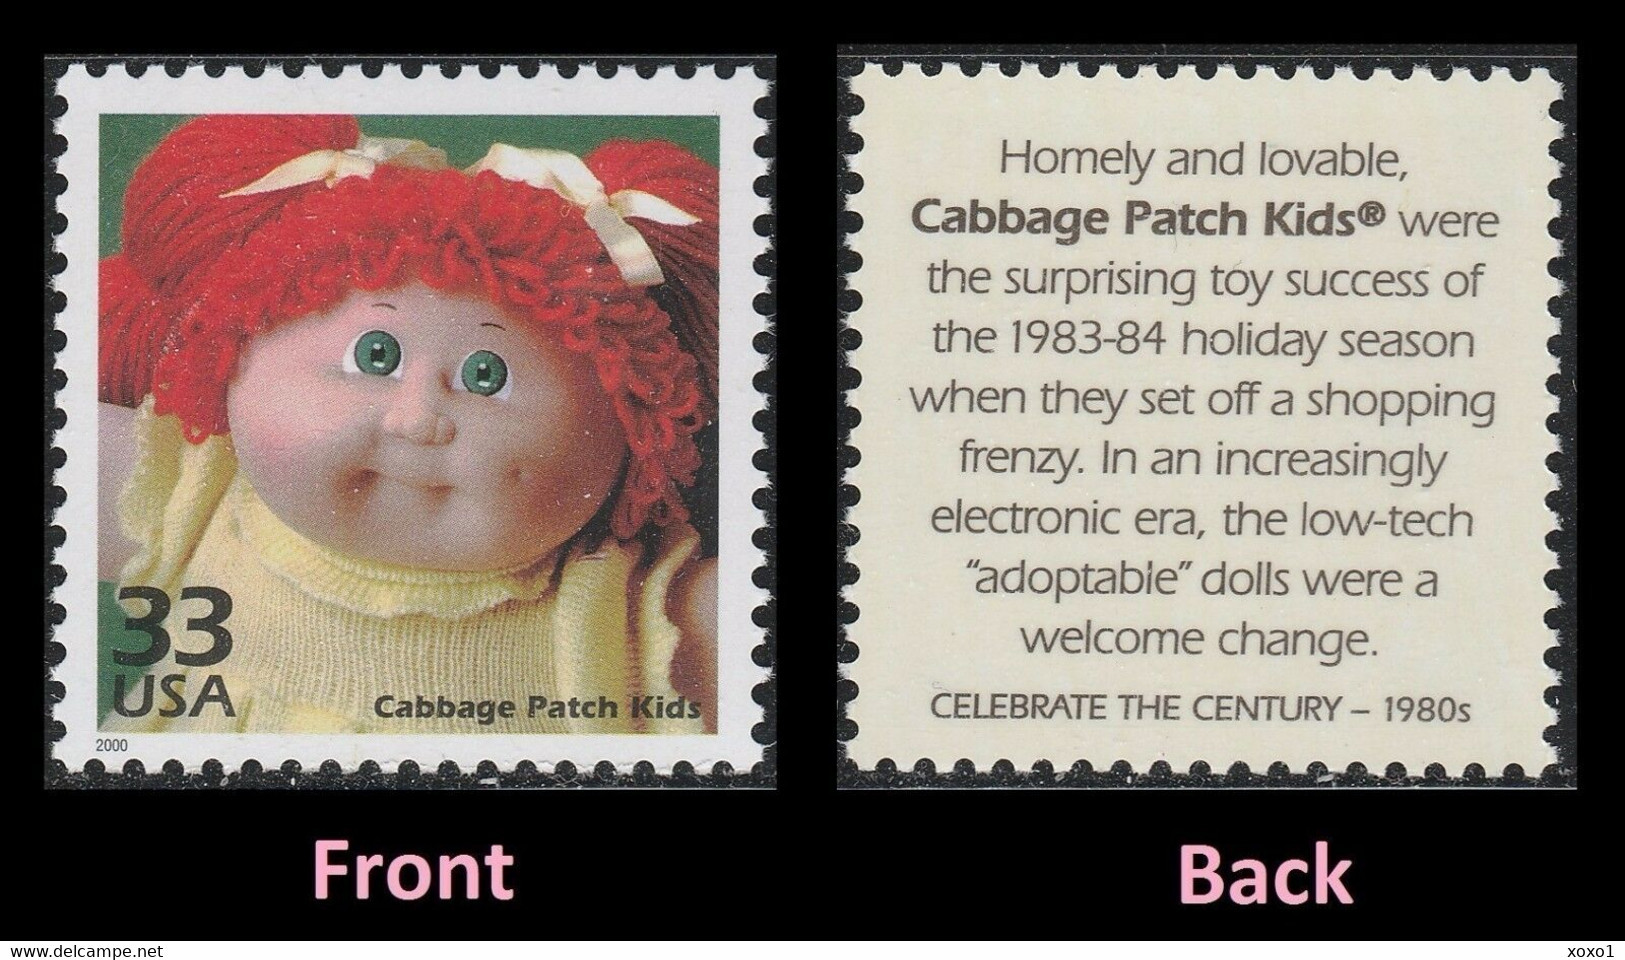 USA 2000 MiNr. 3251 Celebrate The Century 1980s  Childhood "Cabbage Patch Kids" Toy Dolls 1v MNH ** 0,80 € - Bambole